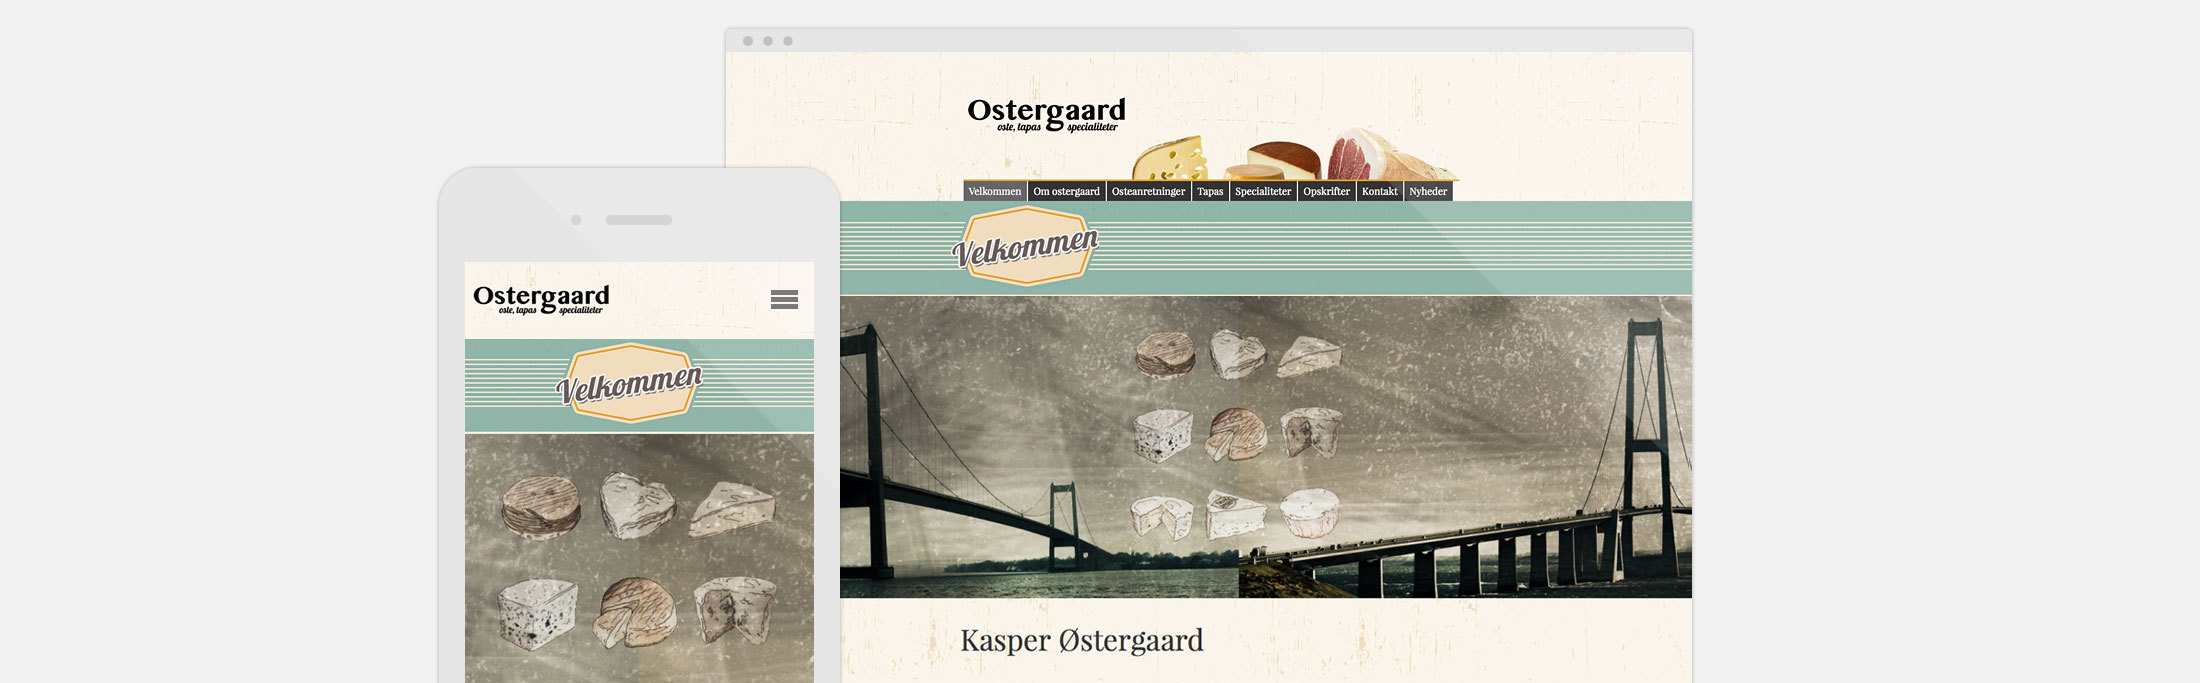 Osteforhandler hjemmeside Middelfart Ostergaard